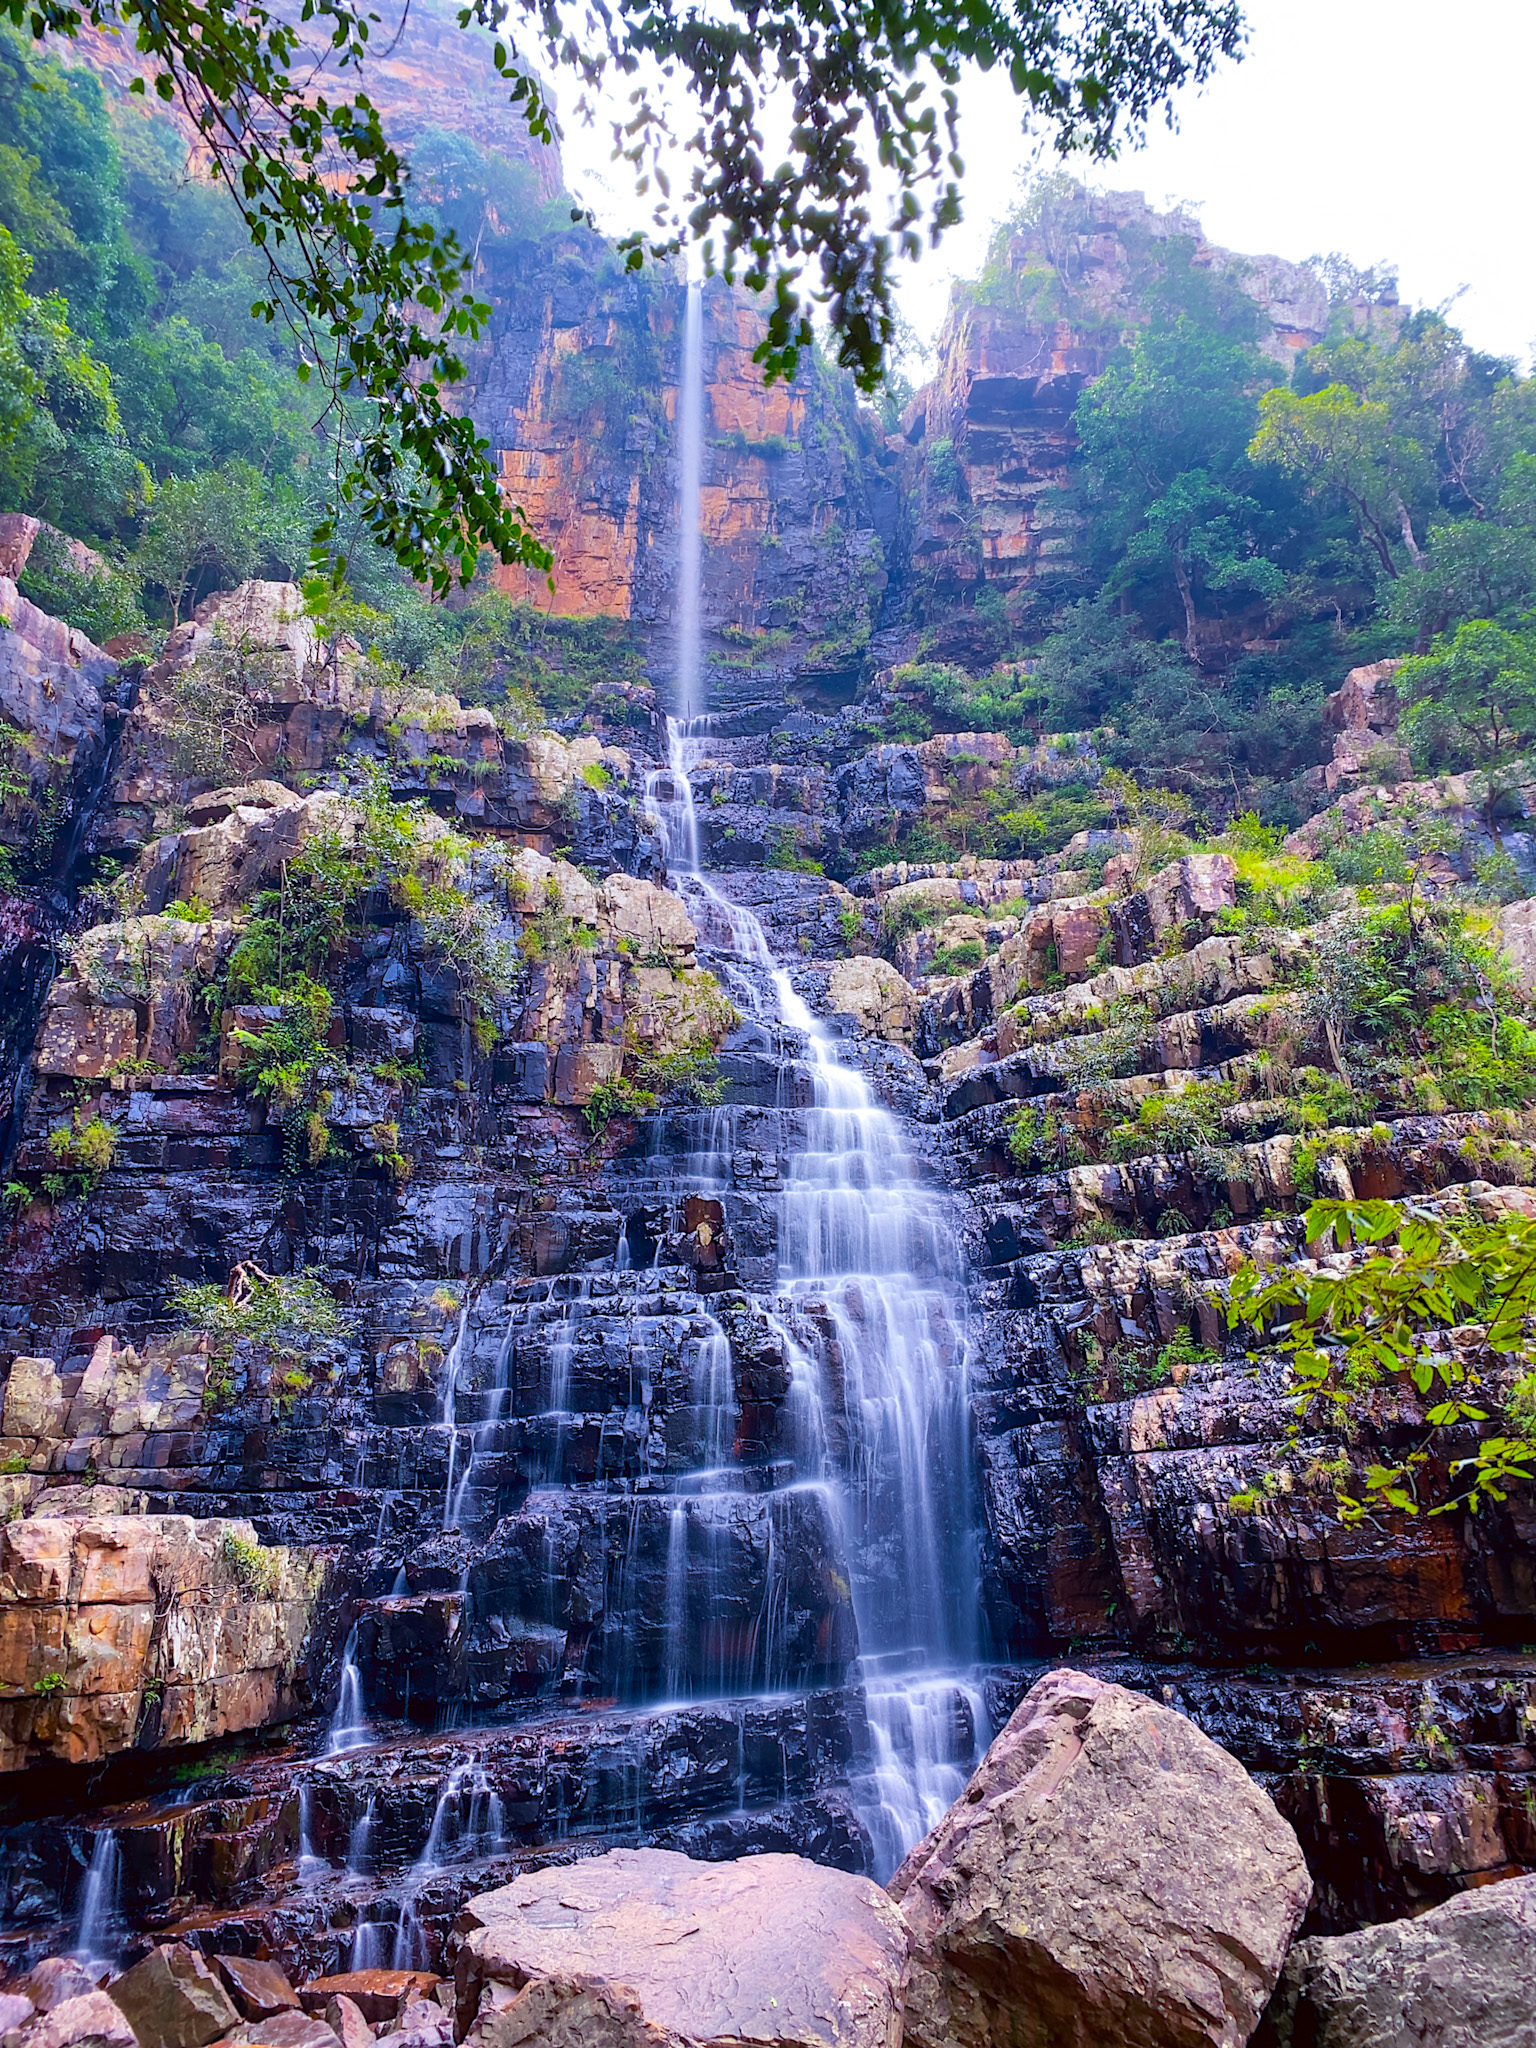 Talakona Waterfalls in Horsley Hills